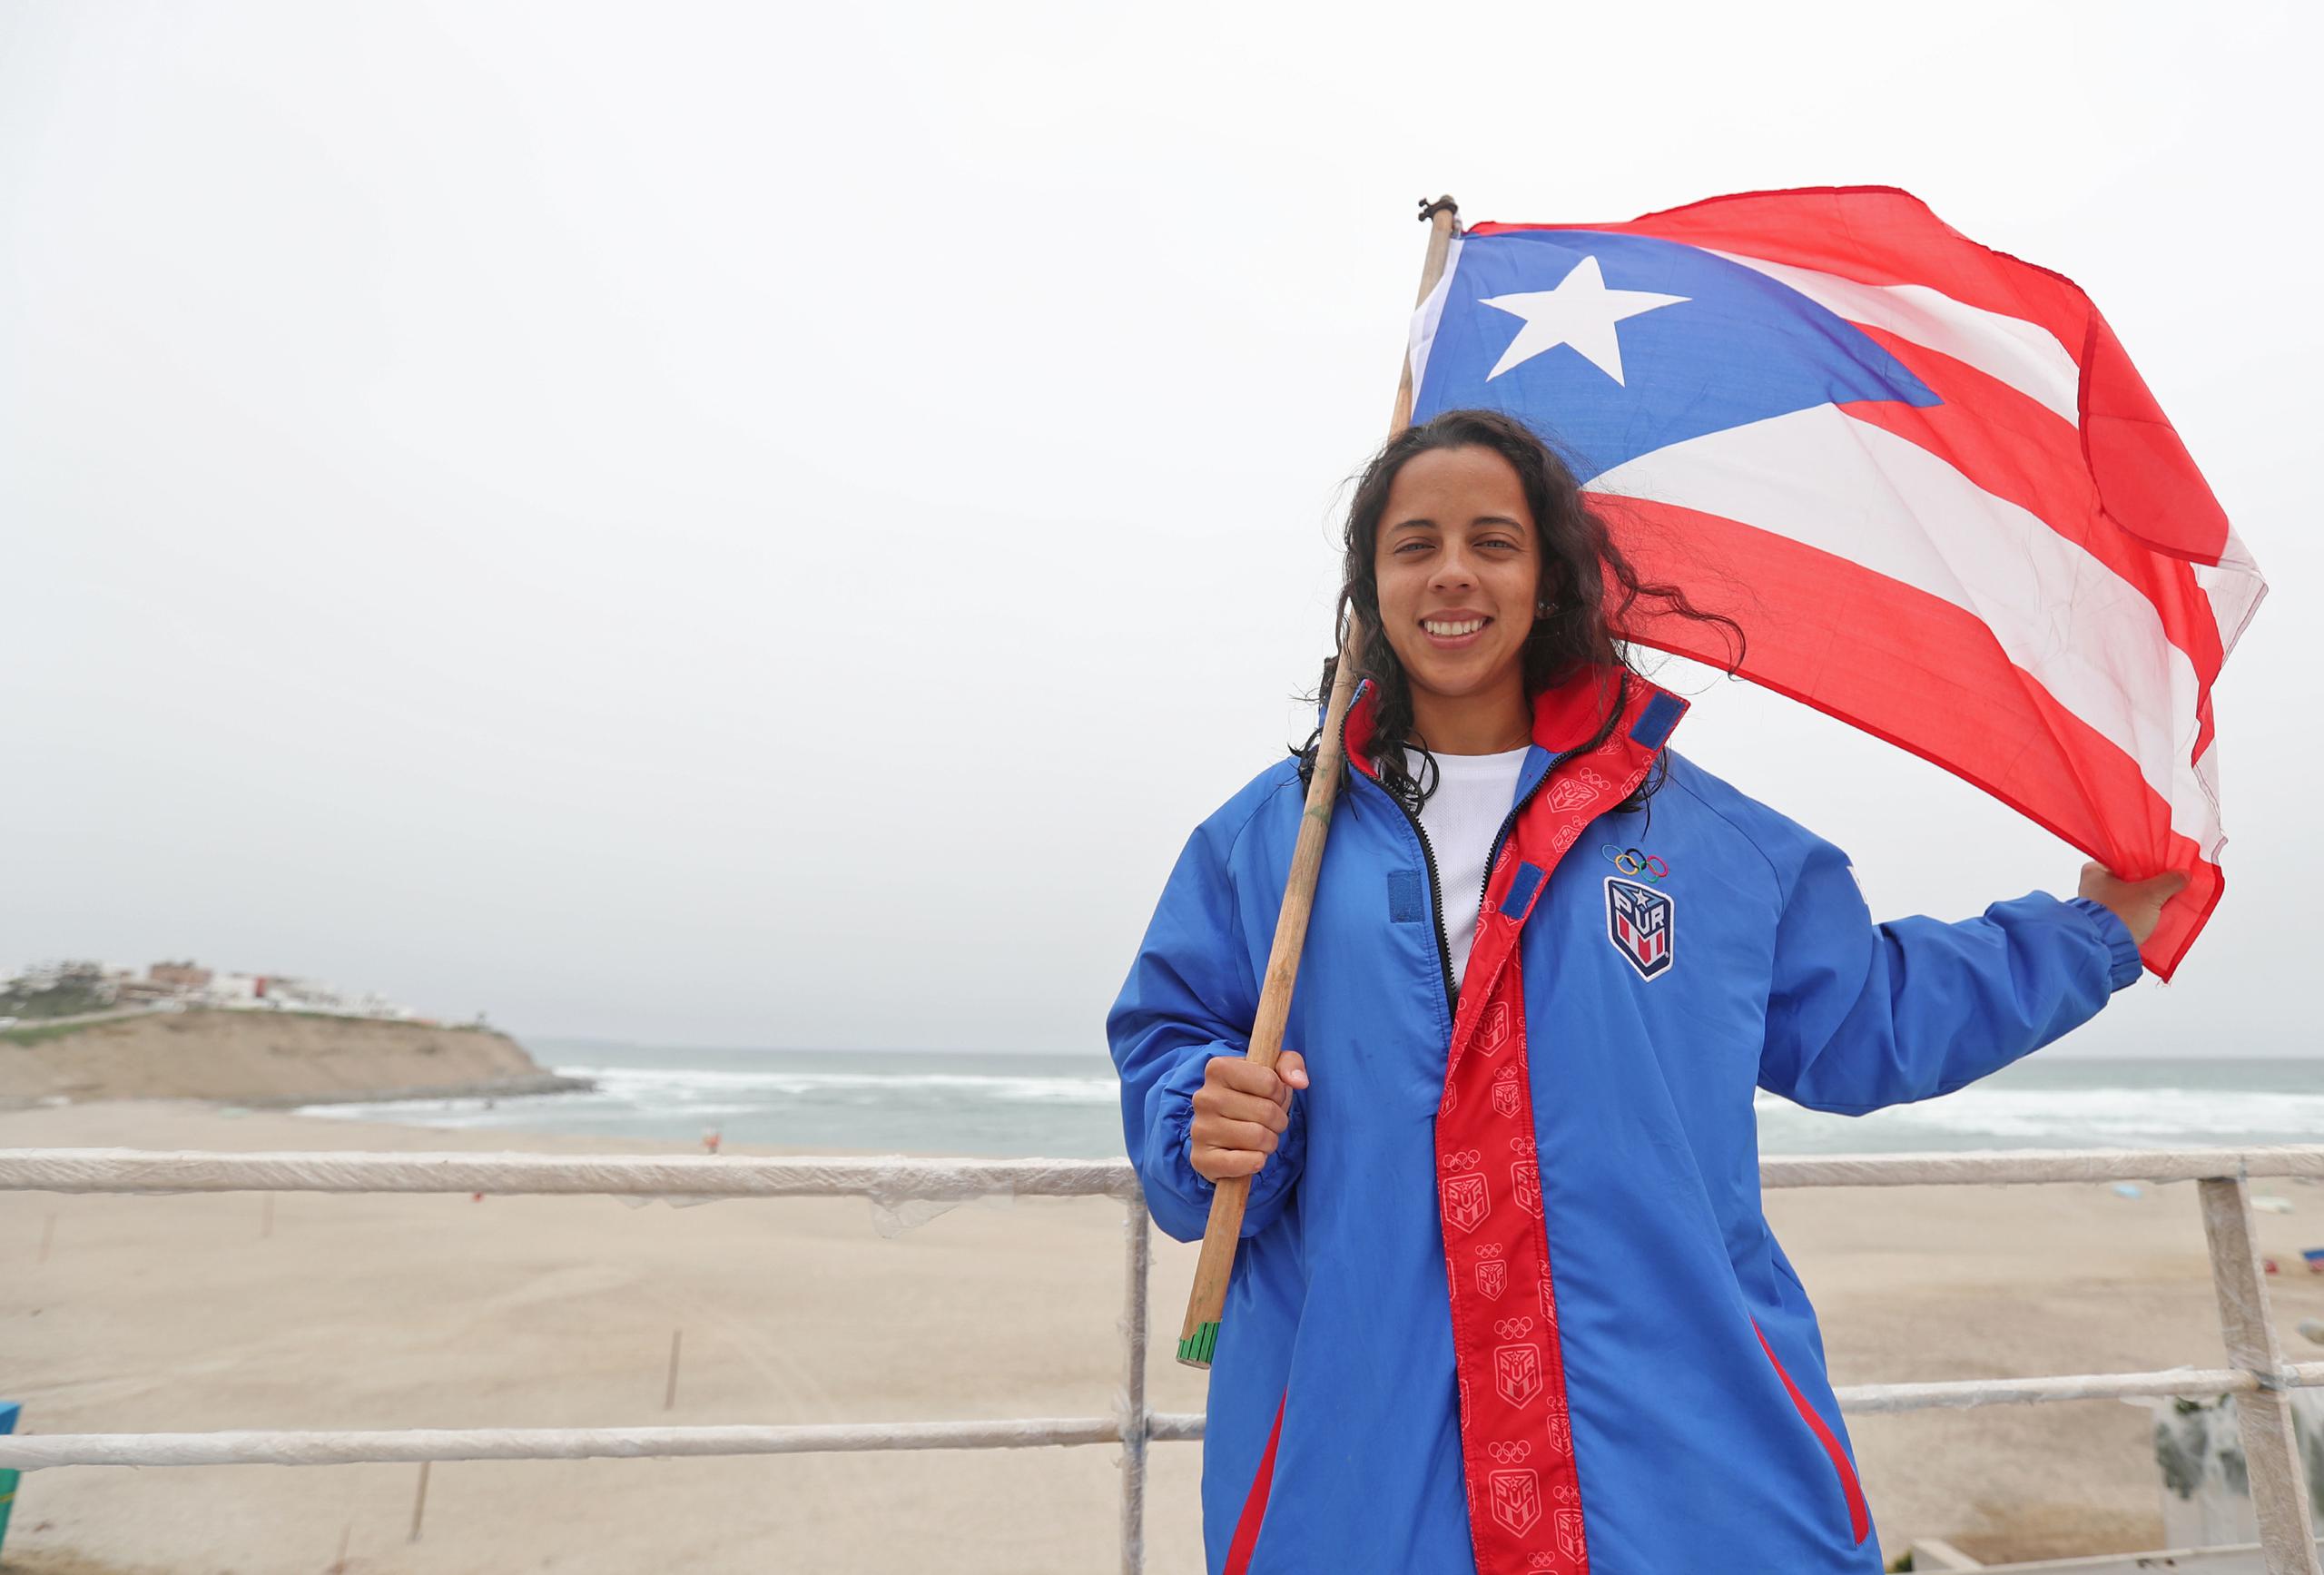 La surfer puertorriqueña Mariecarmen Rivera Rivera, ganó una medalla de bronce en paddleboard de los Juegos Panamericanos Lima 2019.